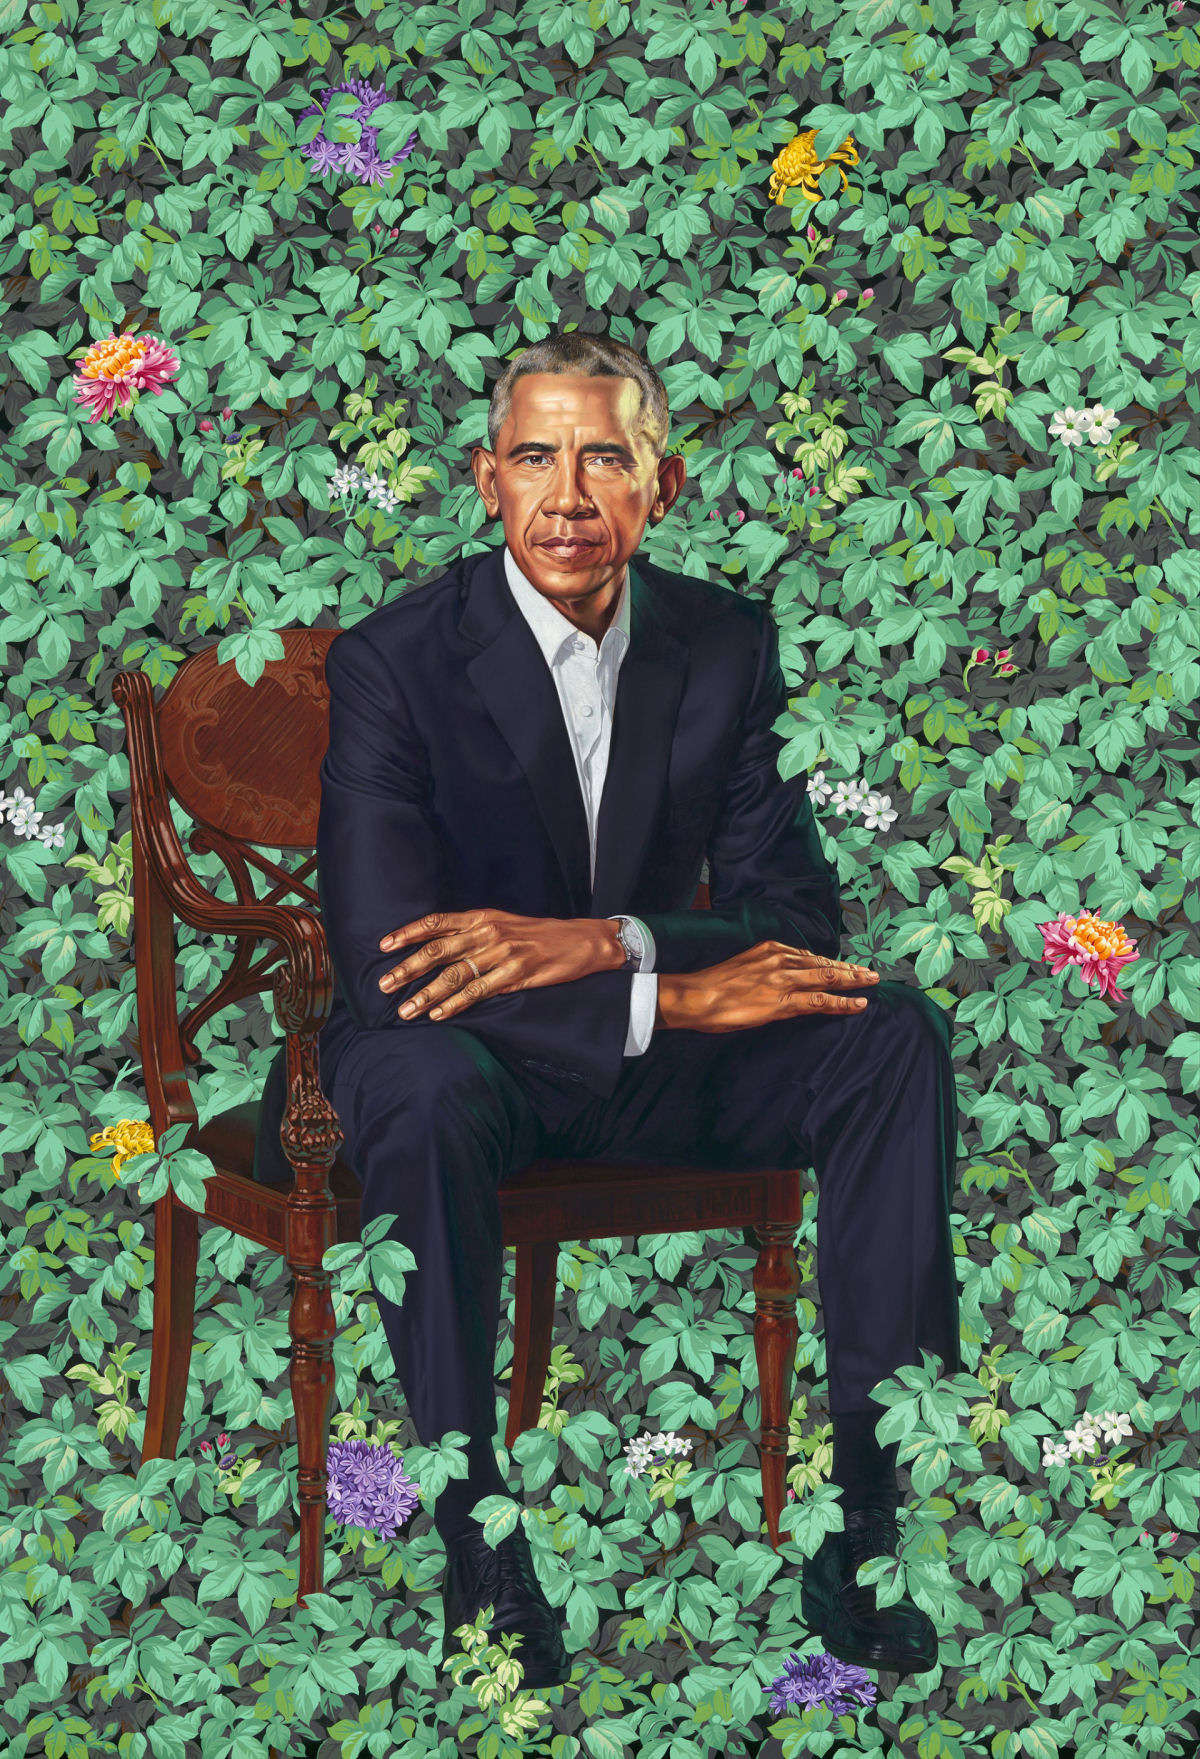 Os estranhos retratos oficiais dos Obama para o Smithsonian provocam desconcerto nas redes sociais